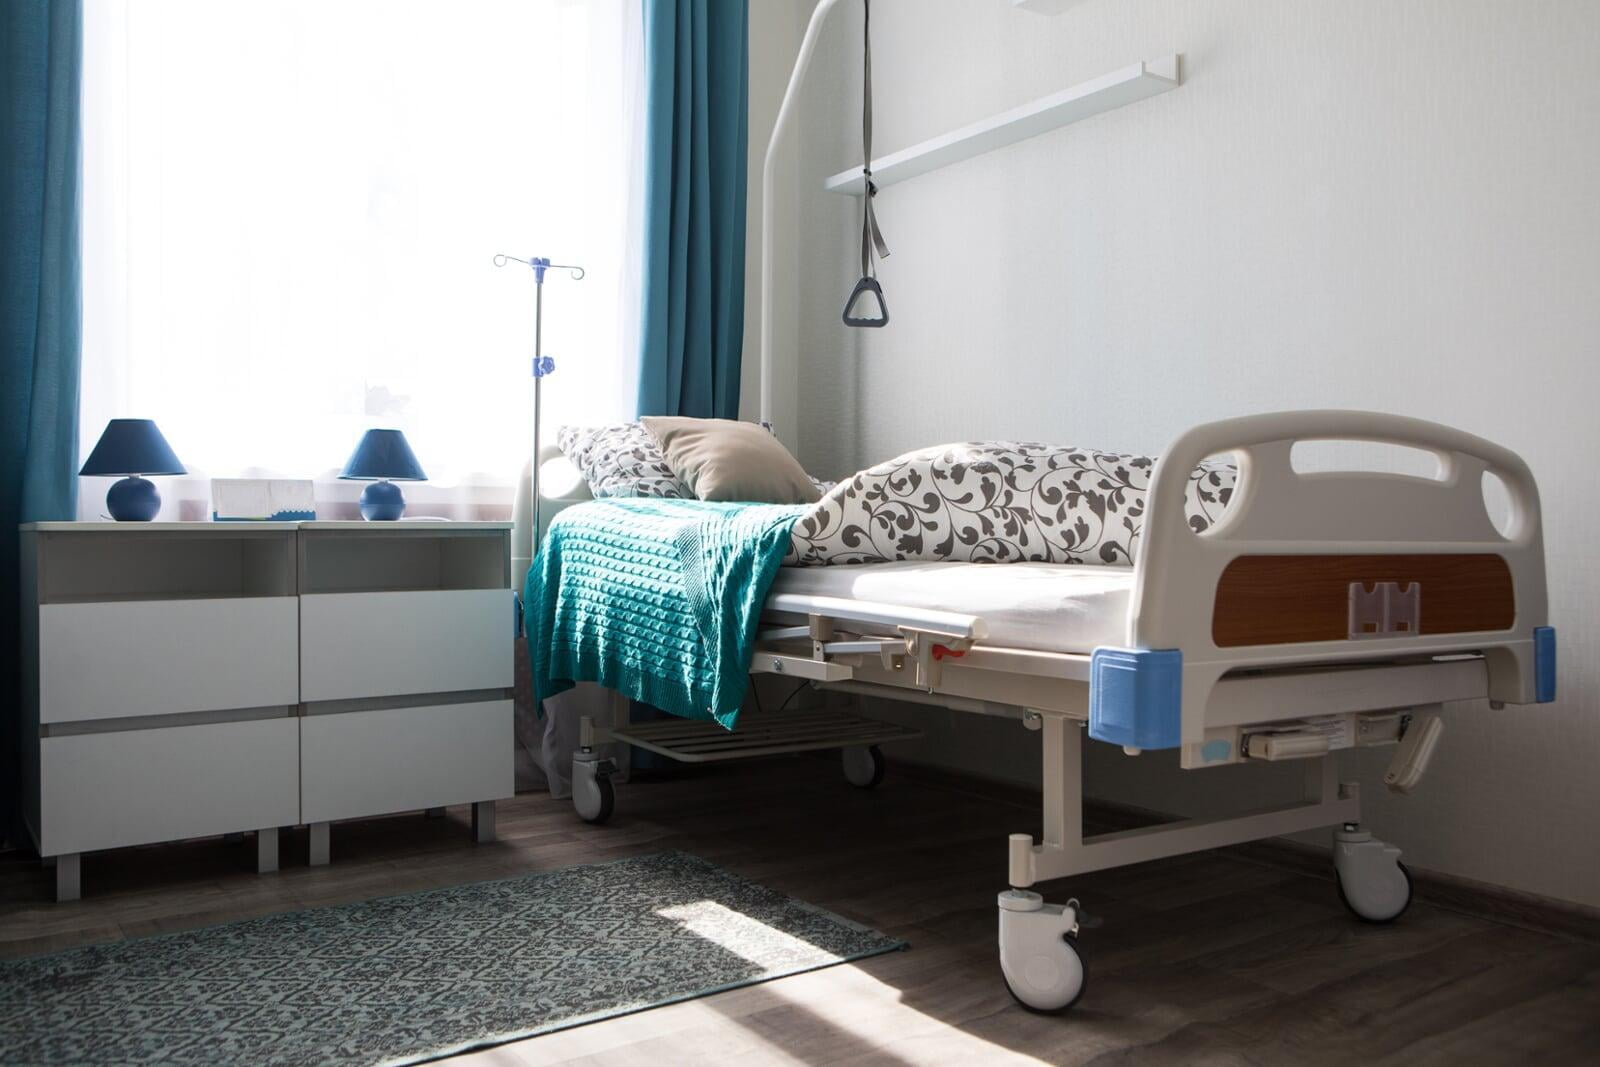 Short-Handed Nursing Homes Eye Federal Staffing Mandate